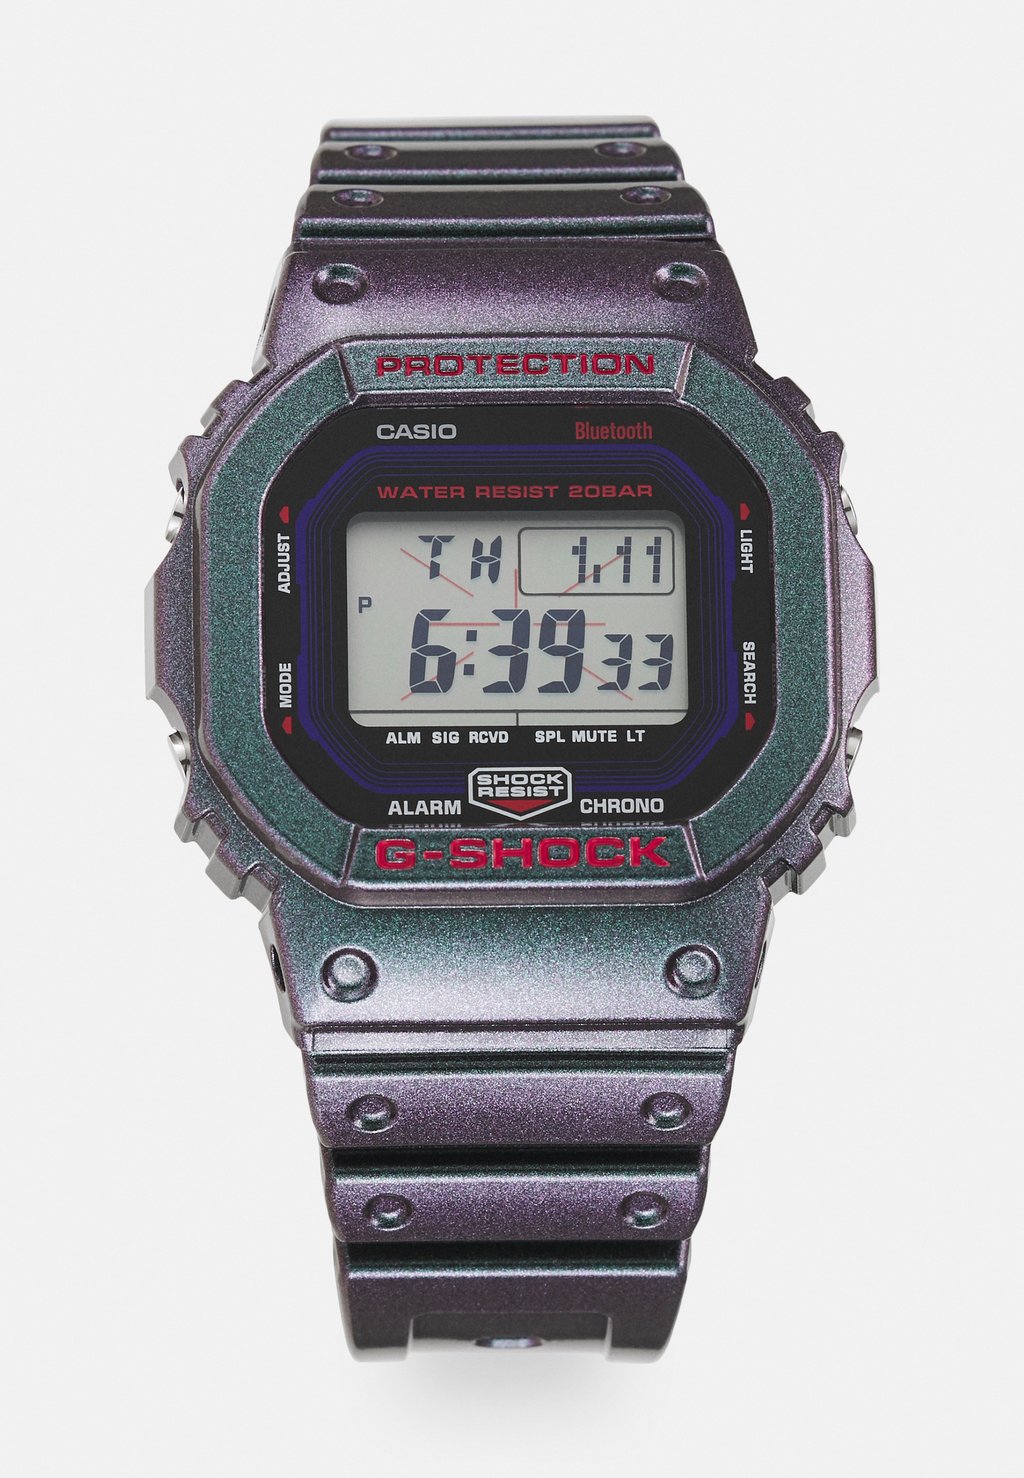 Цифровые часы Aim High Dw-B5600Ah Unisex G-SHOCK, цвет black / purple iridescent цена и фото